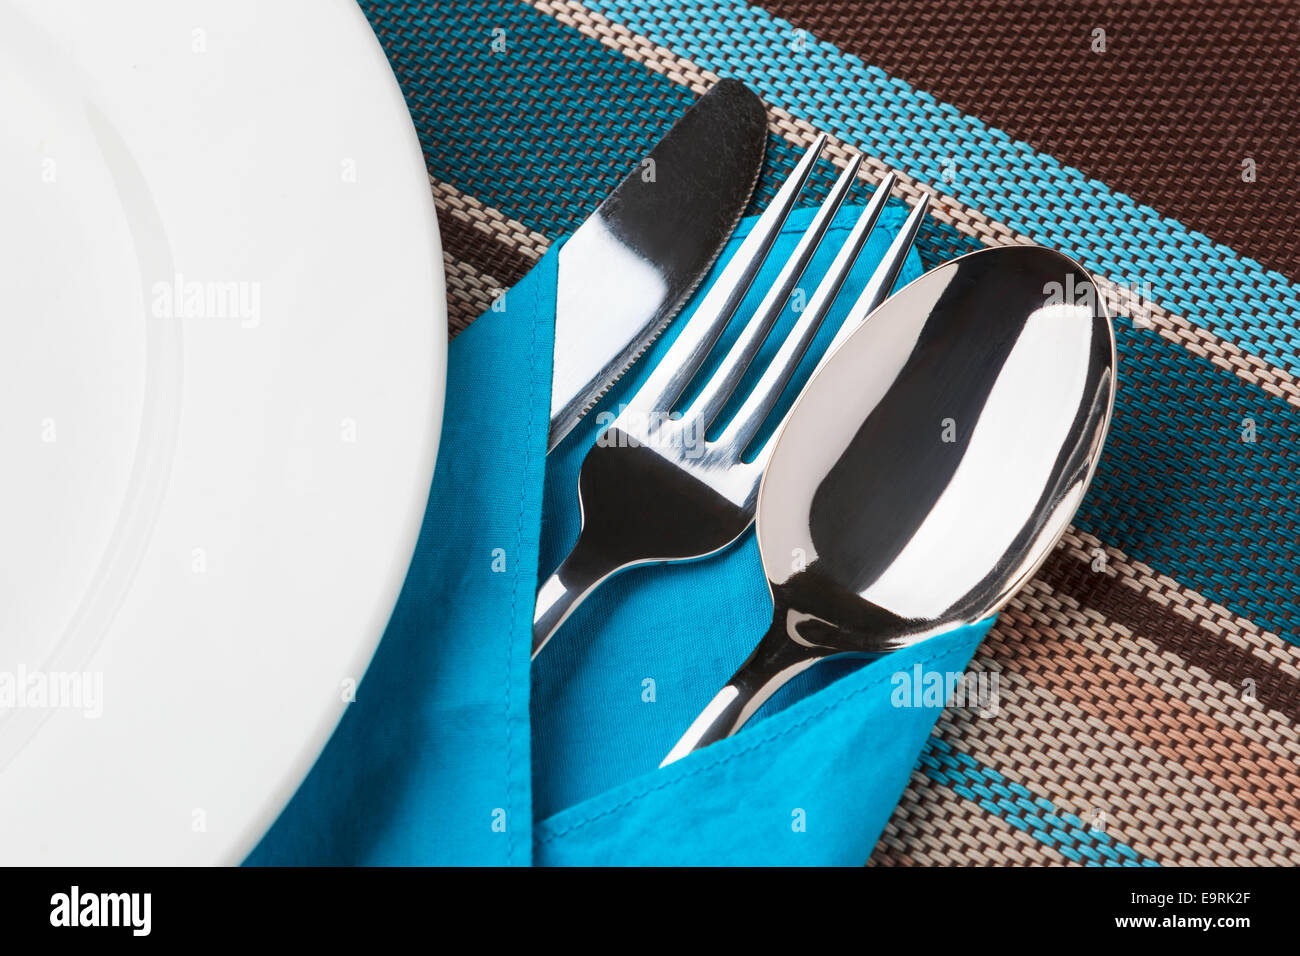 Couteaux, fourchettes, cuillères et la plaque sur la table. Banque D'Images